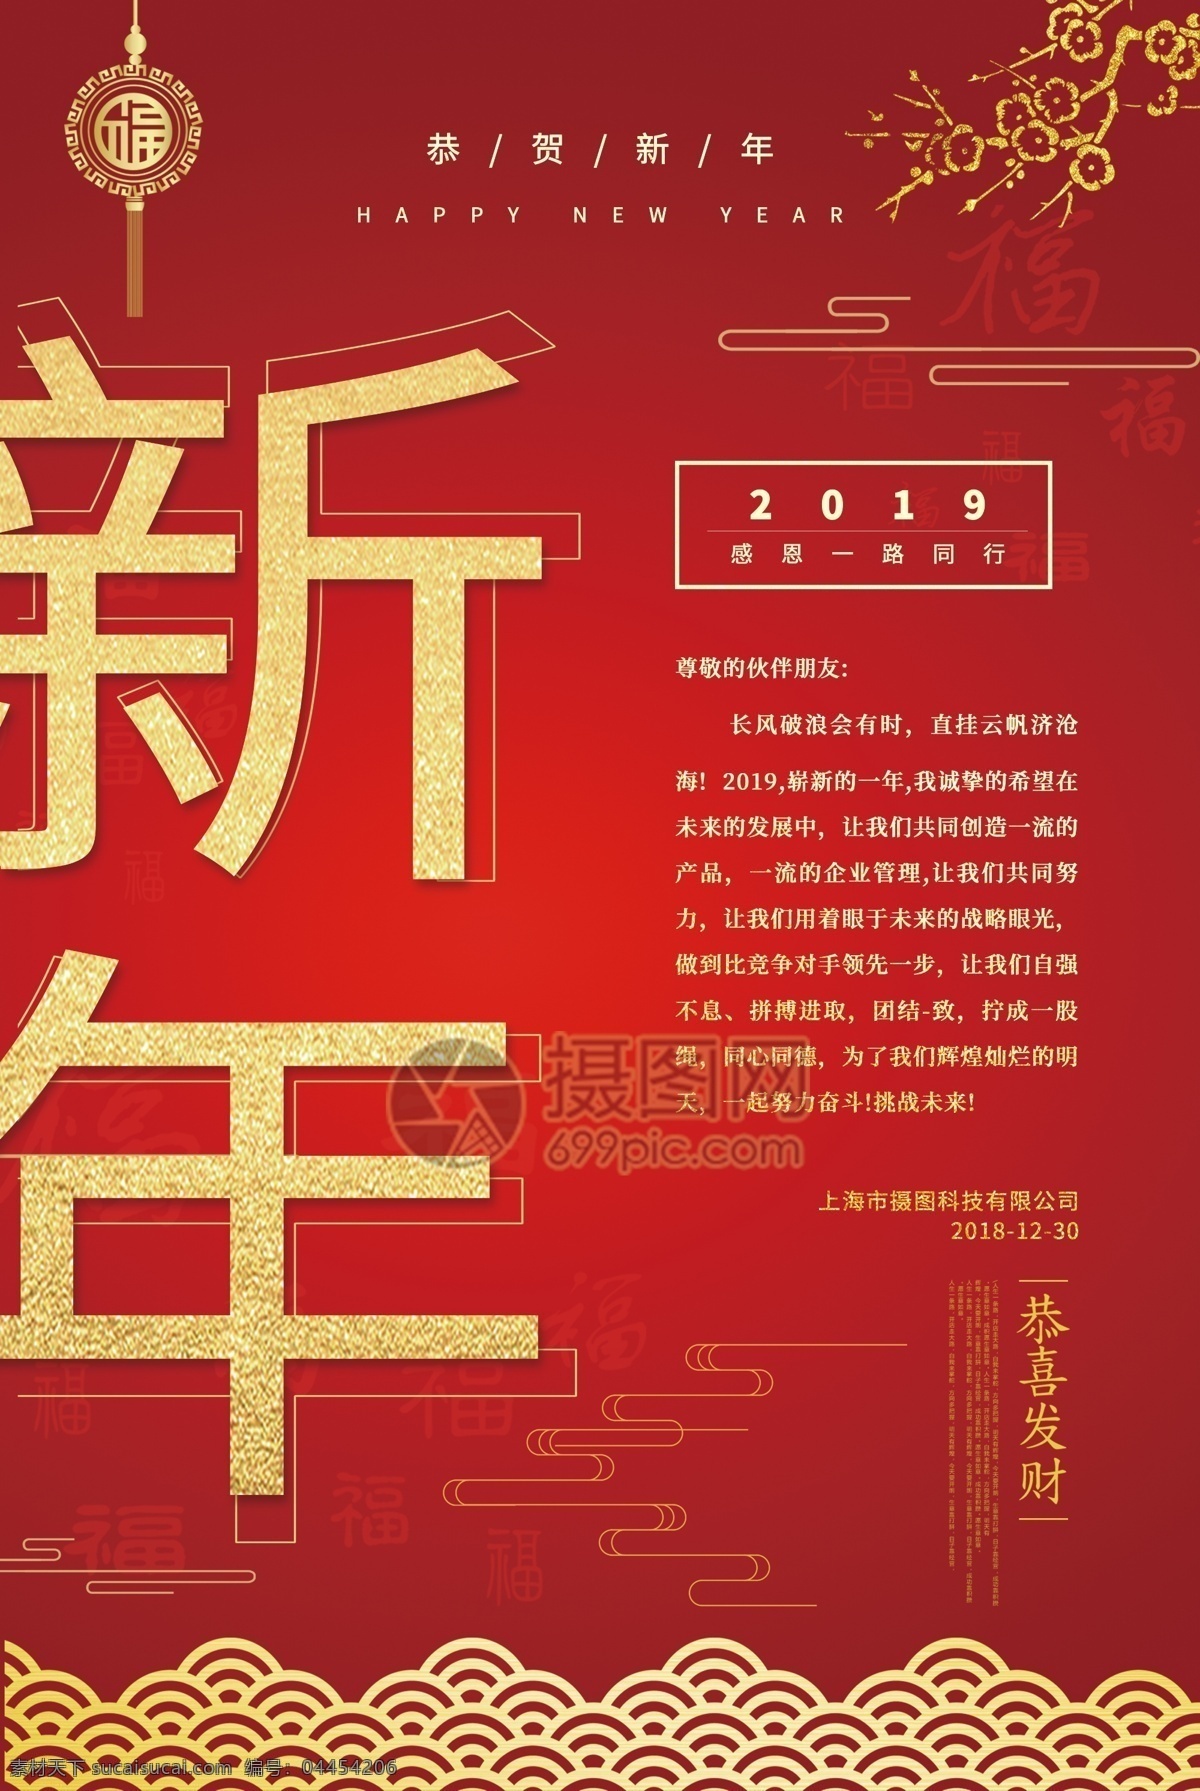 中国 红 新年 感谢信 海报 中国风 红色 中国红 新春 猪年 祝福 公司 答谢 企业 感谢 感恩 协助 年终 信 2019